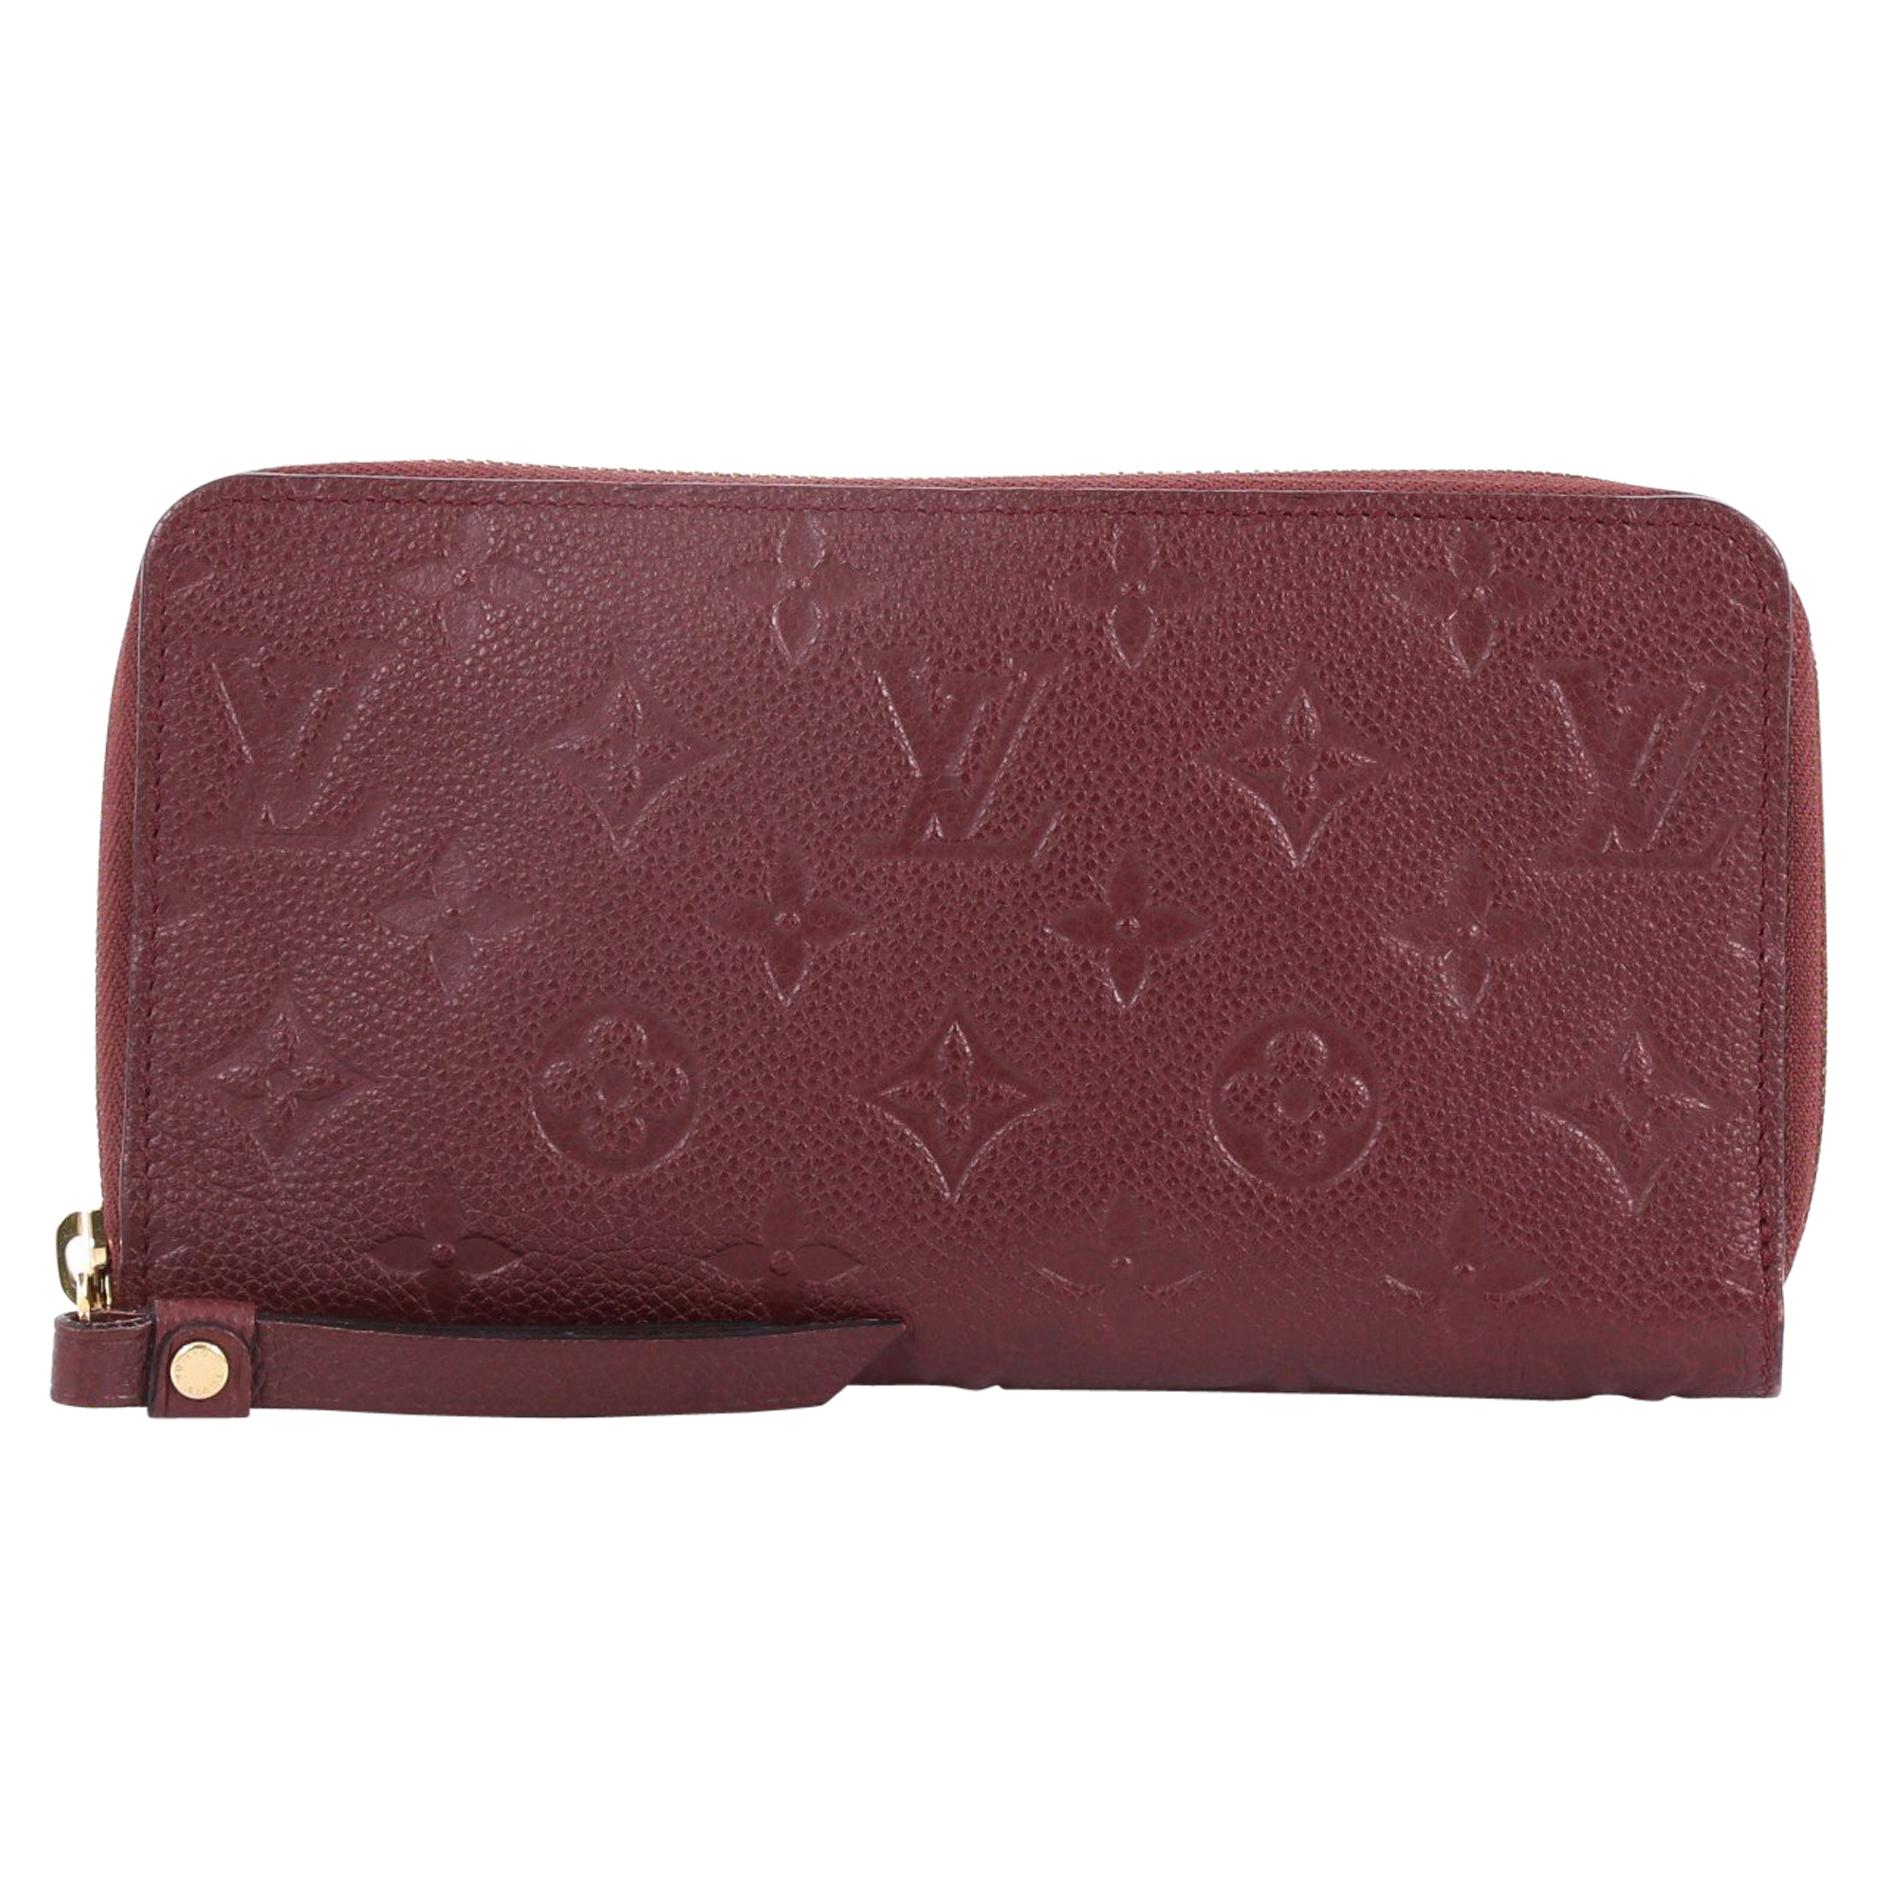  Louis Vuitton Secret Wallet Monogram Empreinte Leather